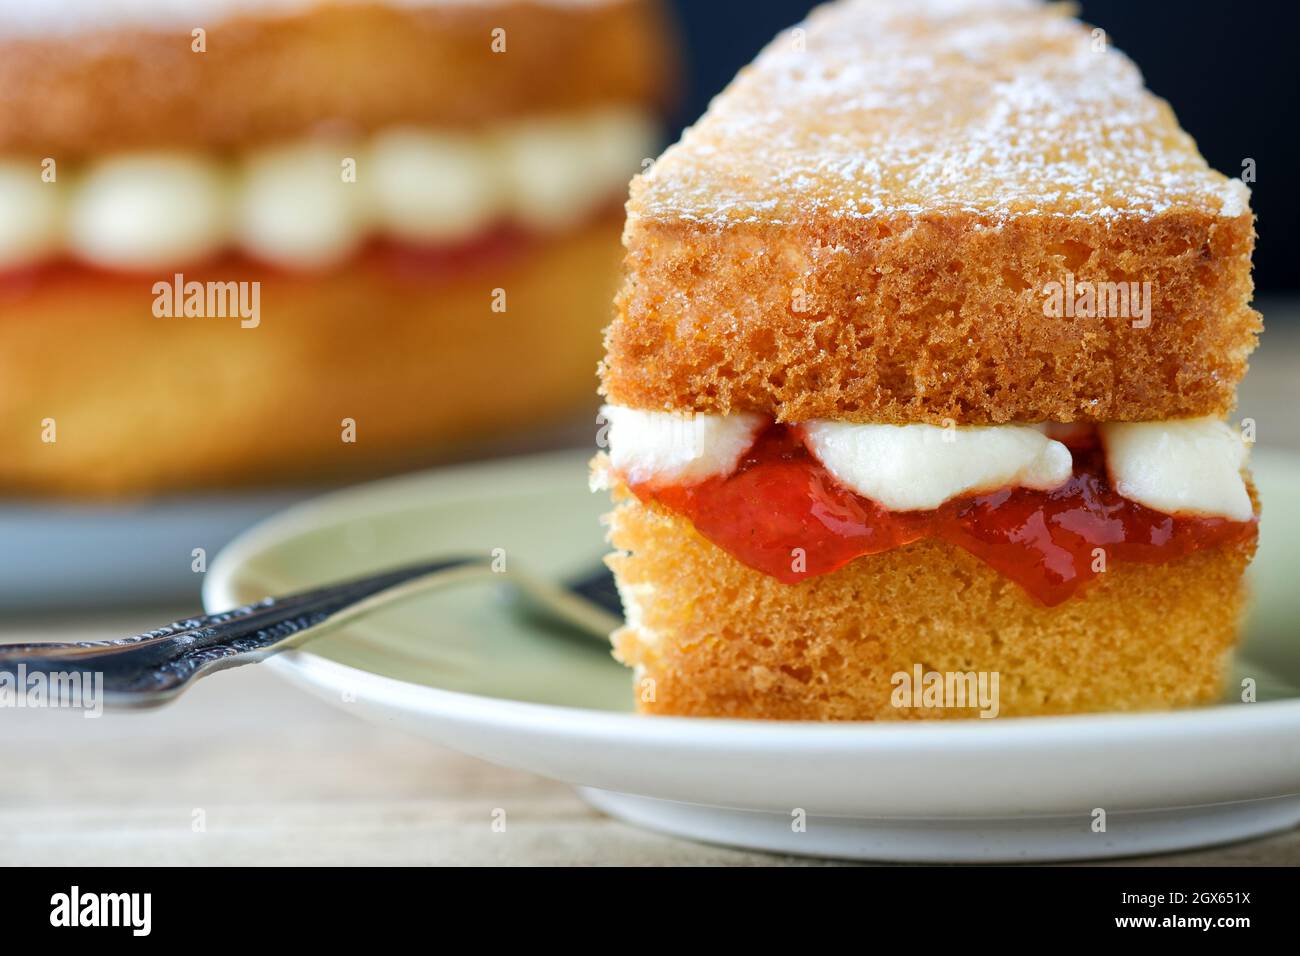 Die Torte ist eine Portion oder ein Stück eines frisch hausgemachten Victoria Sponge- und Sandwichkuchens und hat eine Füllung aus Erdbeermarmelade und Buttercreme Stockfoto